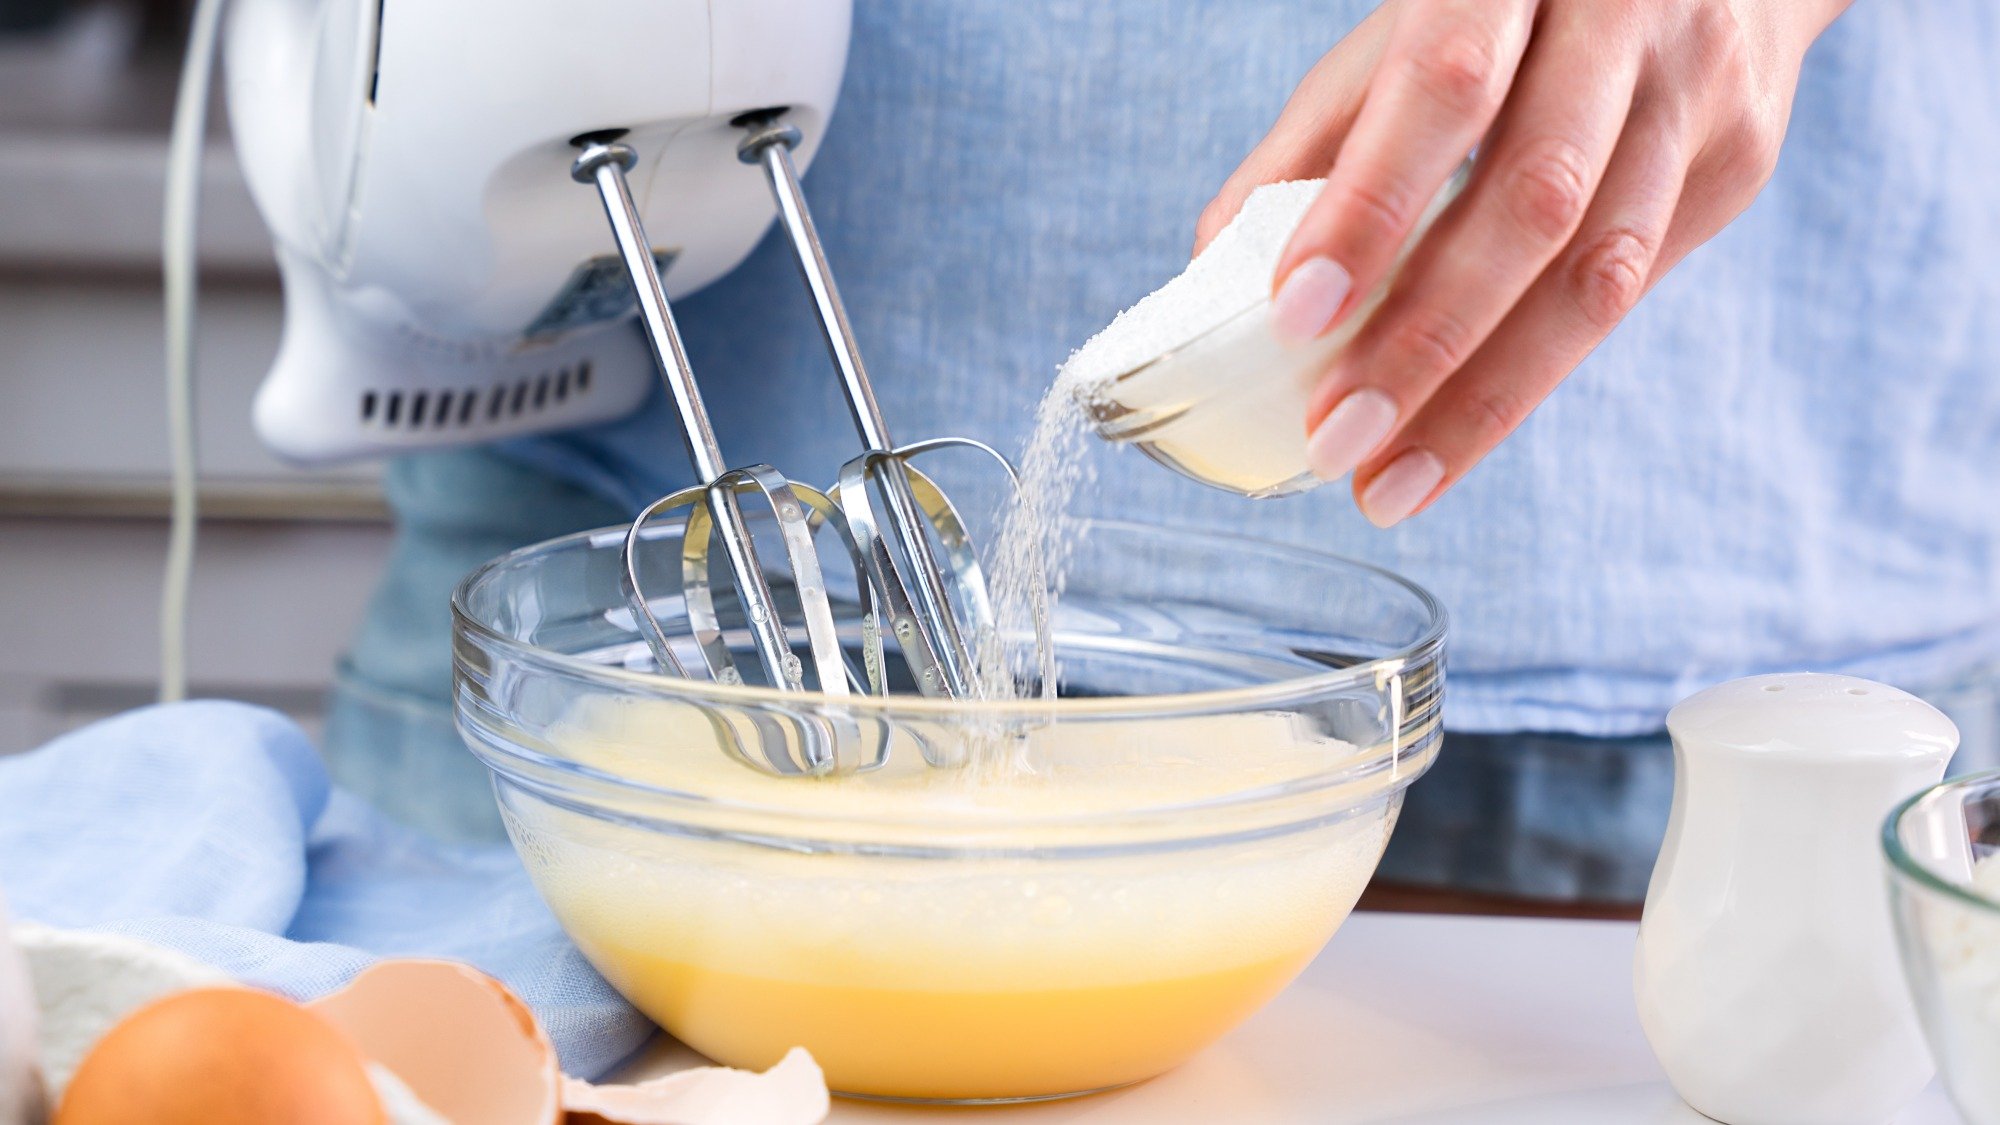 Рука насыпает сахар в миску с яйцами, которые перемешиваются ручным миксером